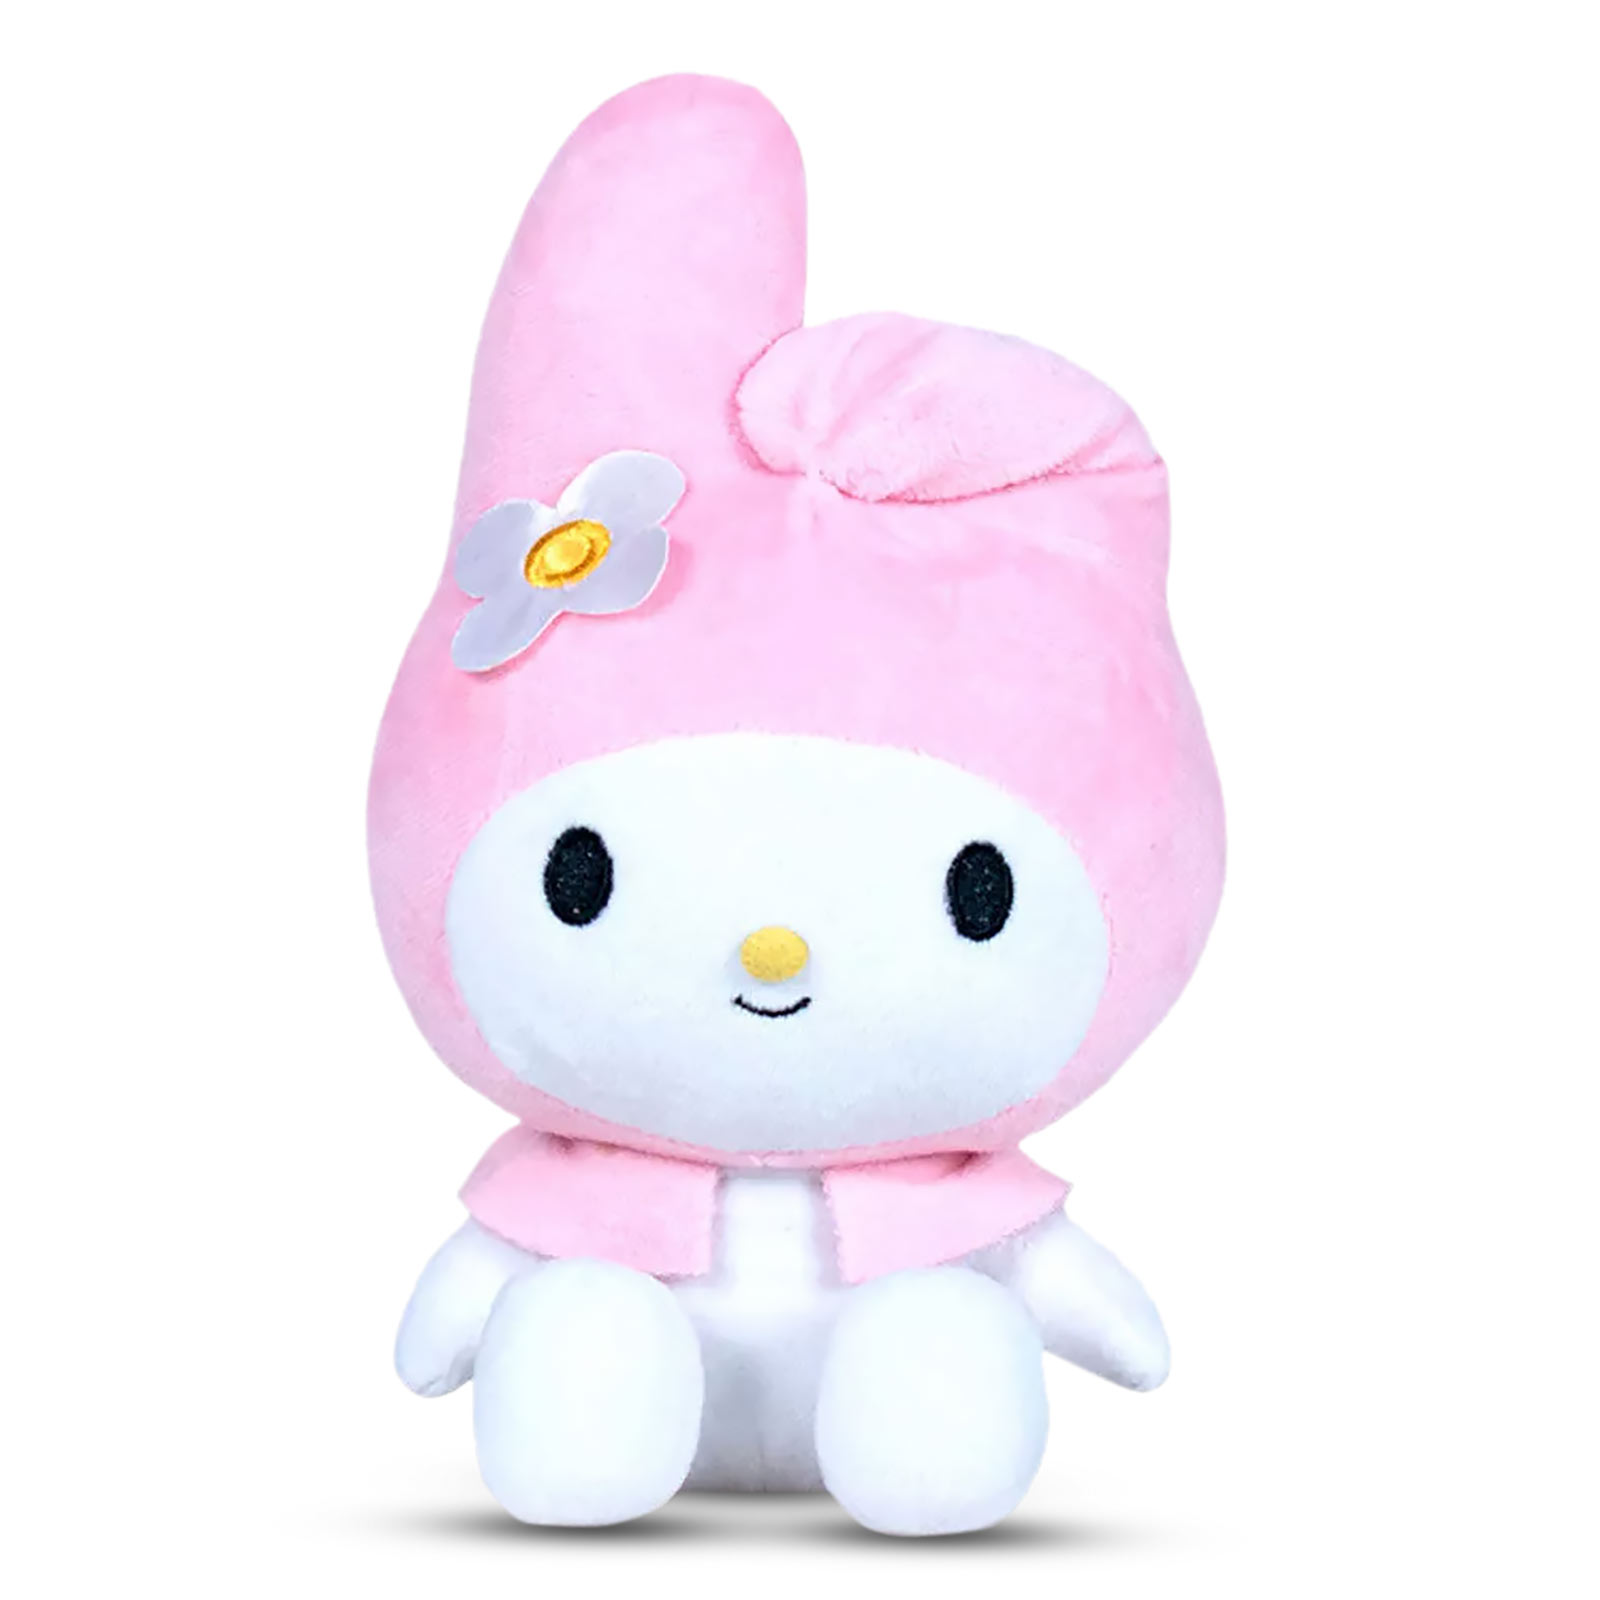 Sanrio - Hello Kitty Melody Plush Figure